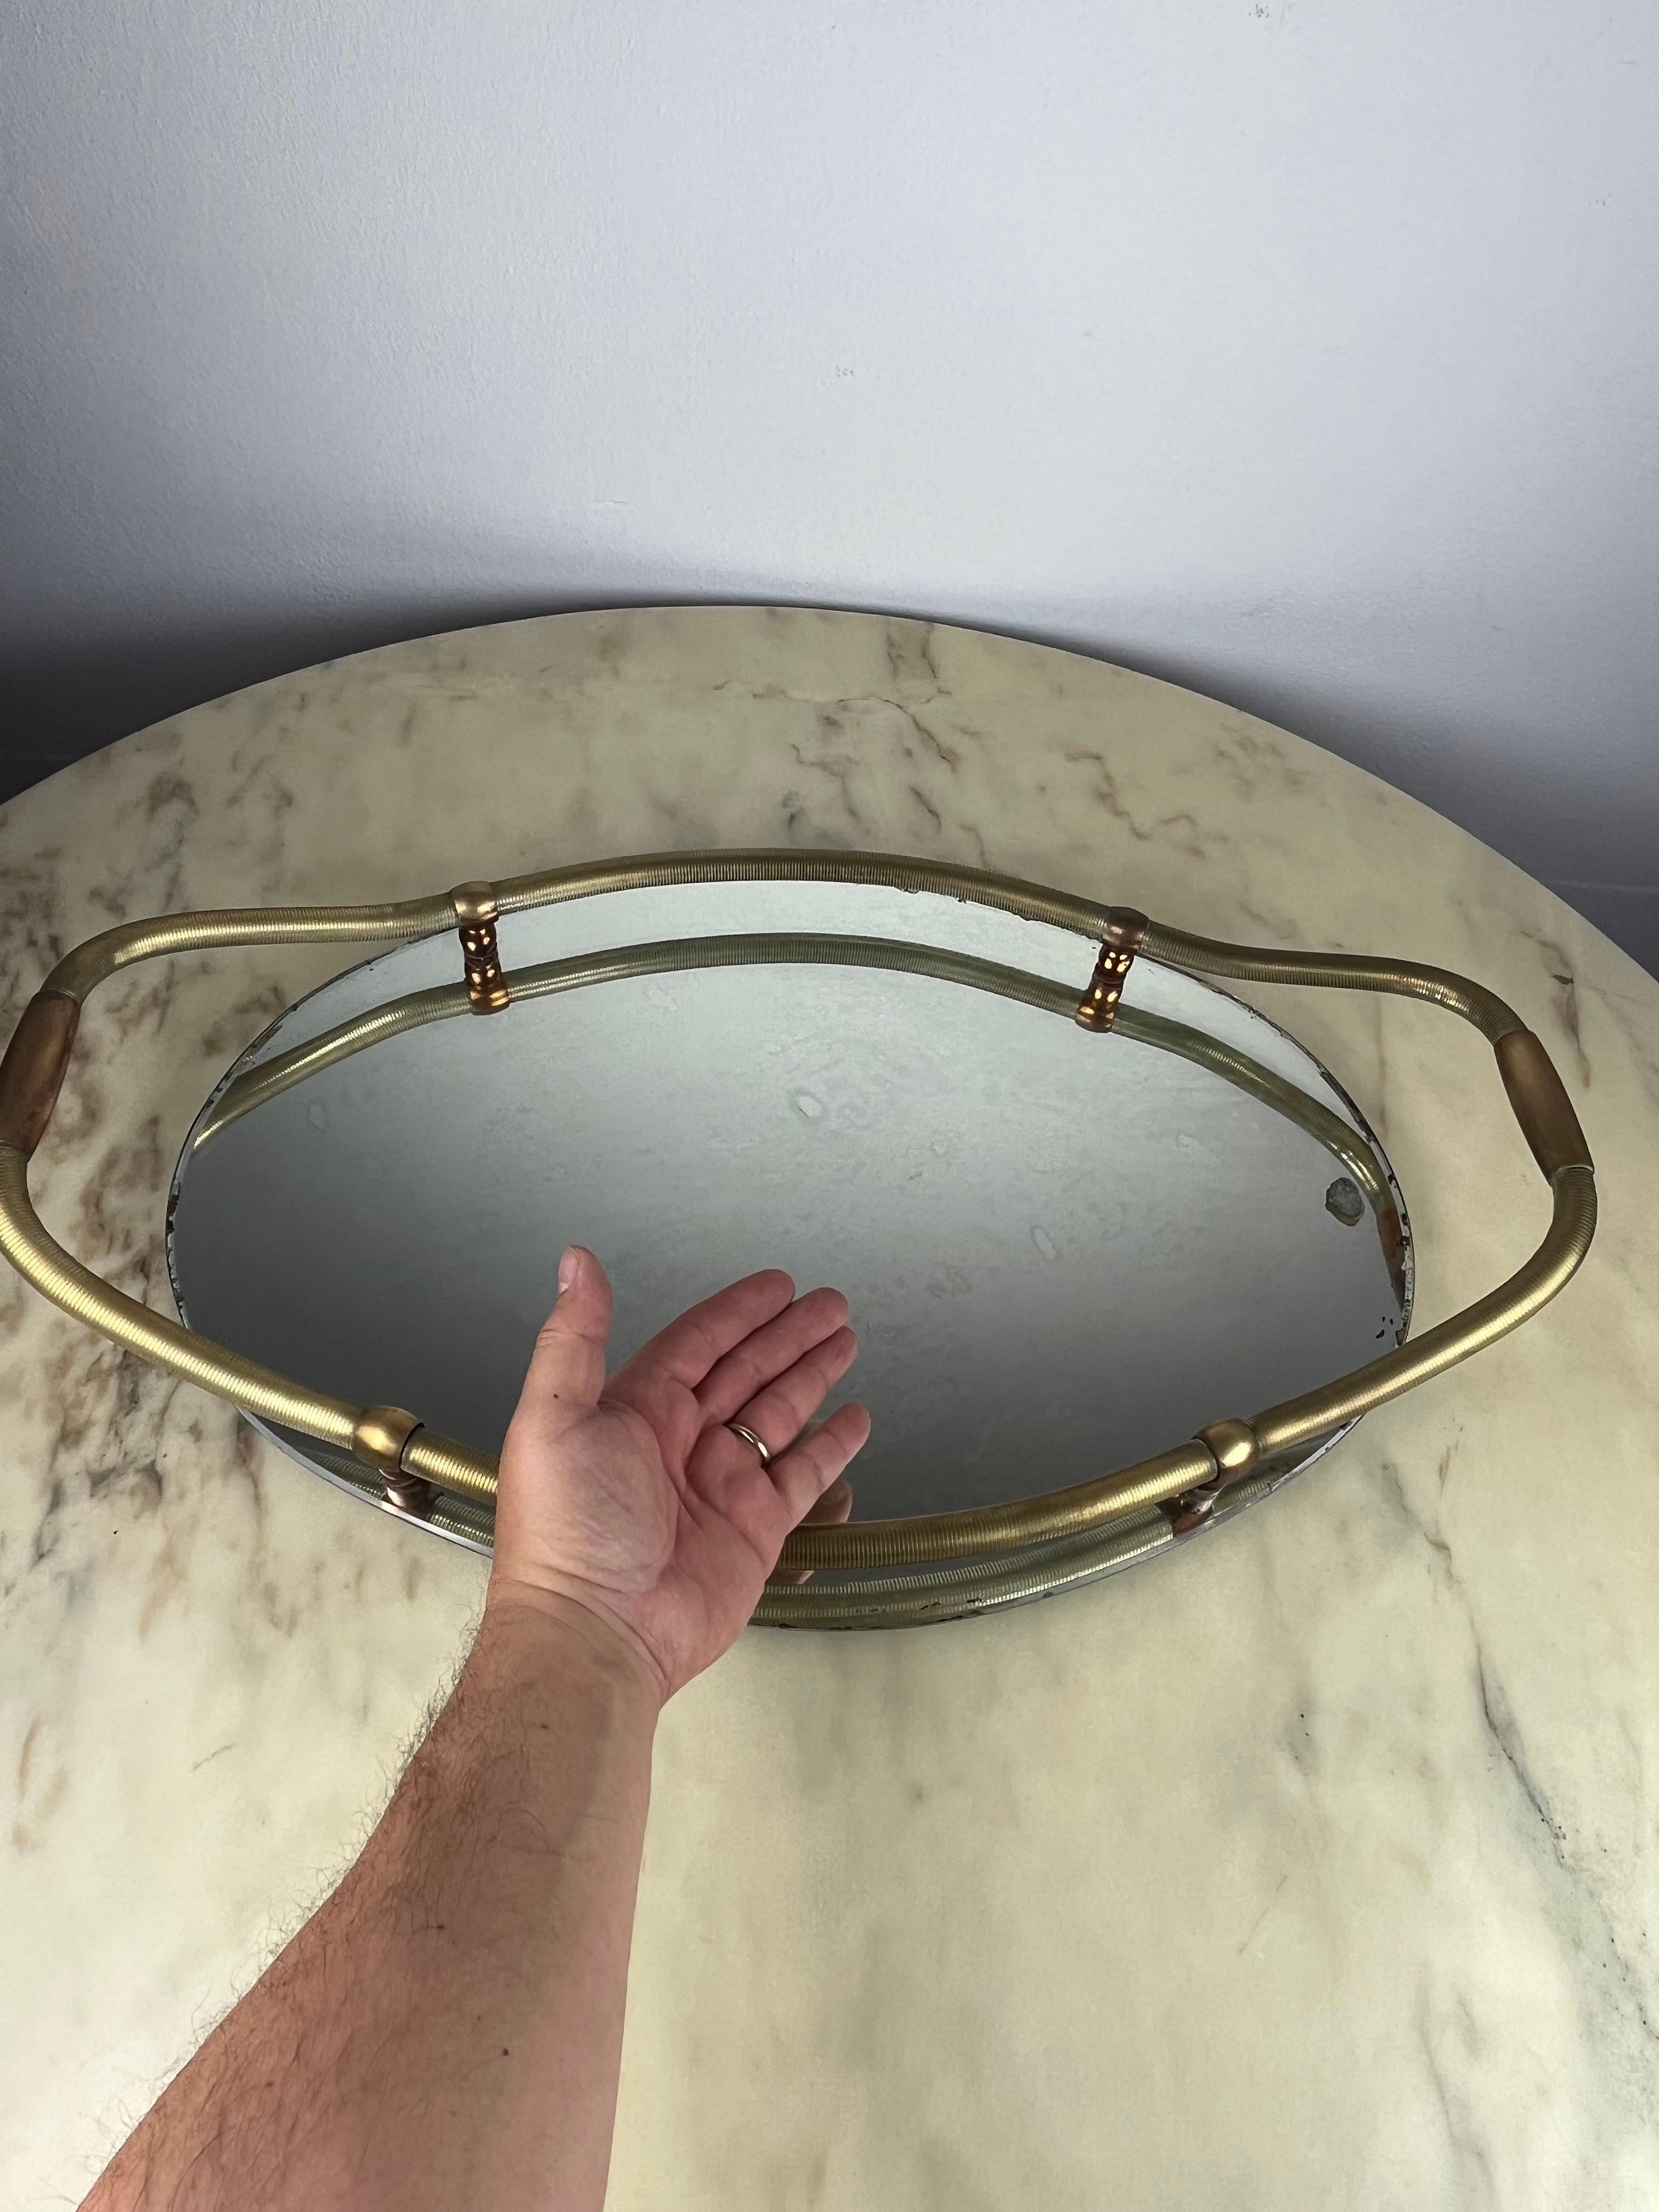 Großes ovales Tablett aus Messing und Spiegel, Italien, 1940er Jahre
Hochzeitsgeschenk meiner Urgroßeltern, gekauft im bekanntesten Juweliergeschäft meiner Stadt.
Kleine Zeit- und Gebrauchsspuren.